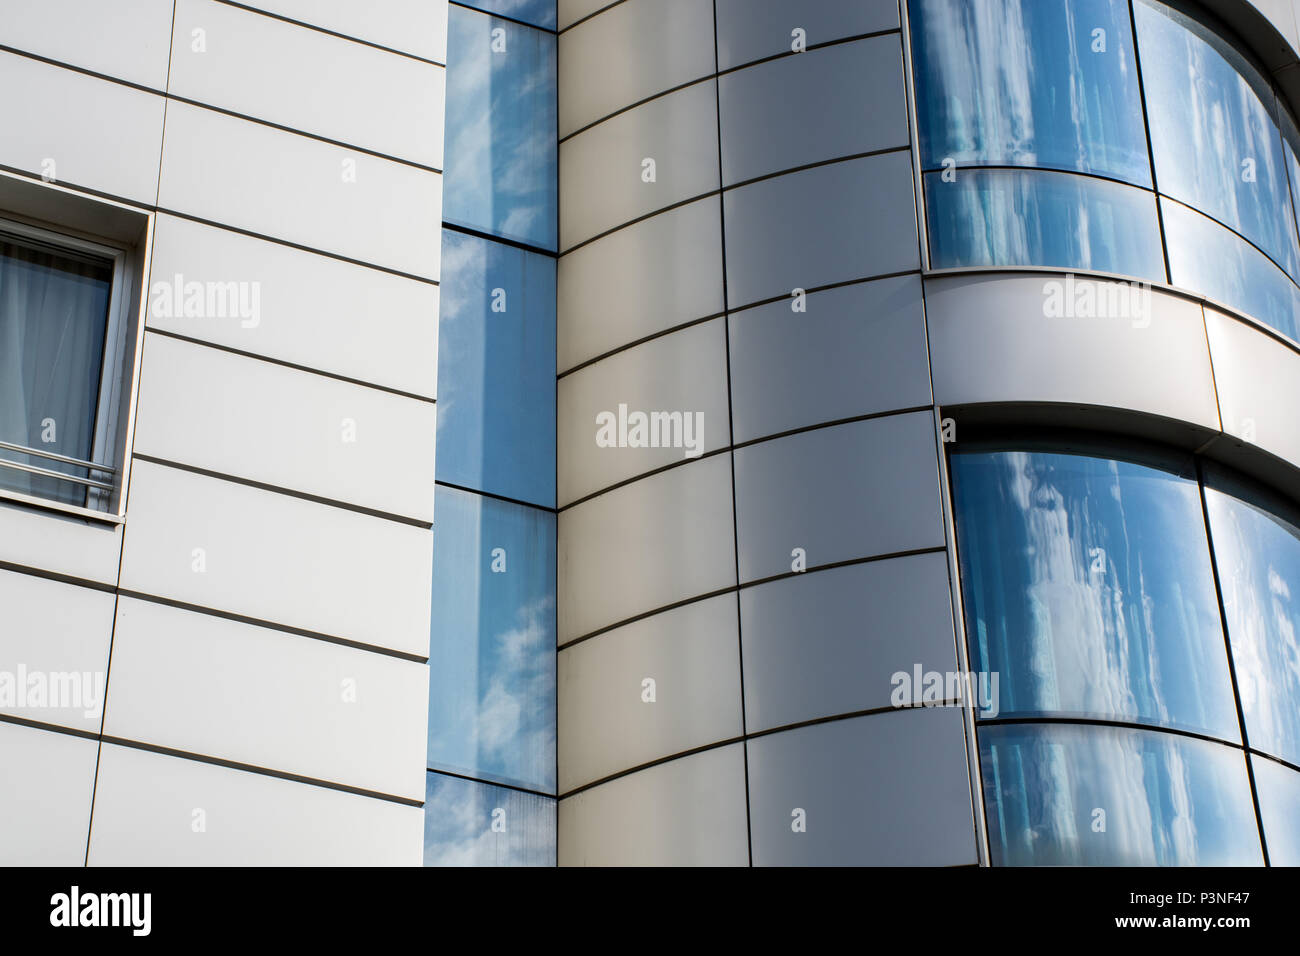 Détails immeuble de bureaux modernes, une surface en verre. Reflet bleu nuage et du ciel dans les fenêtres et façades métalliques. Résumé Contexte et concept de surface Banque D'Images